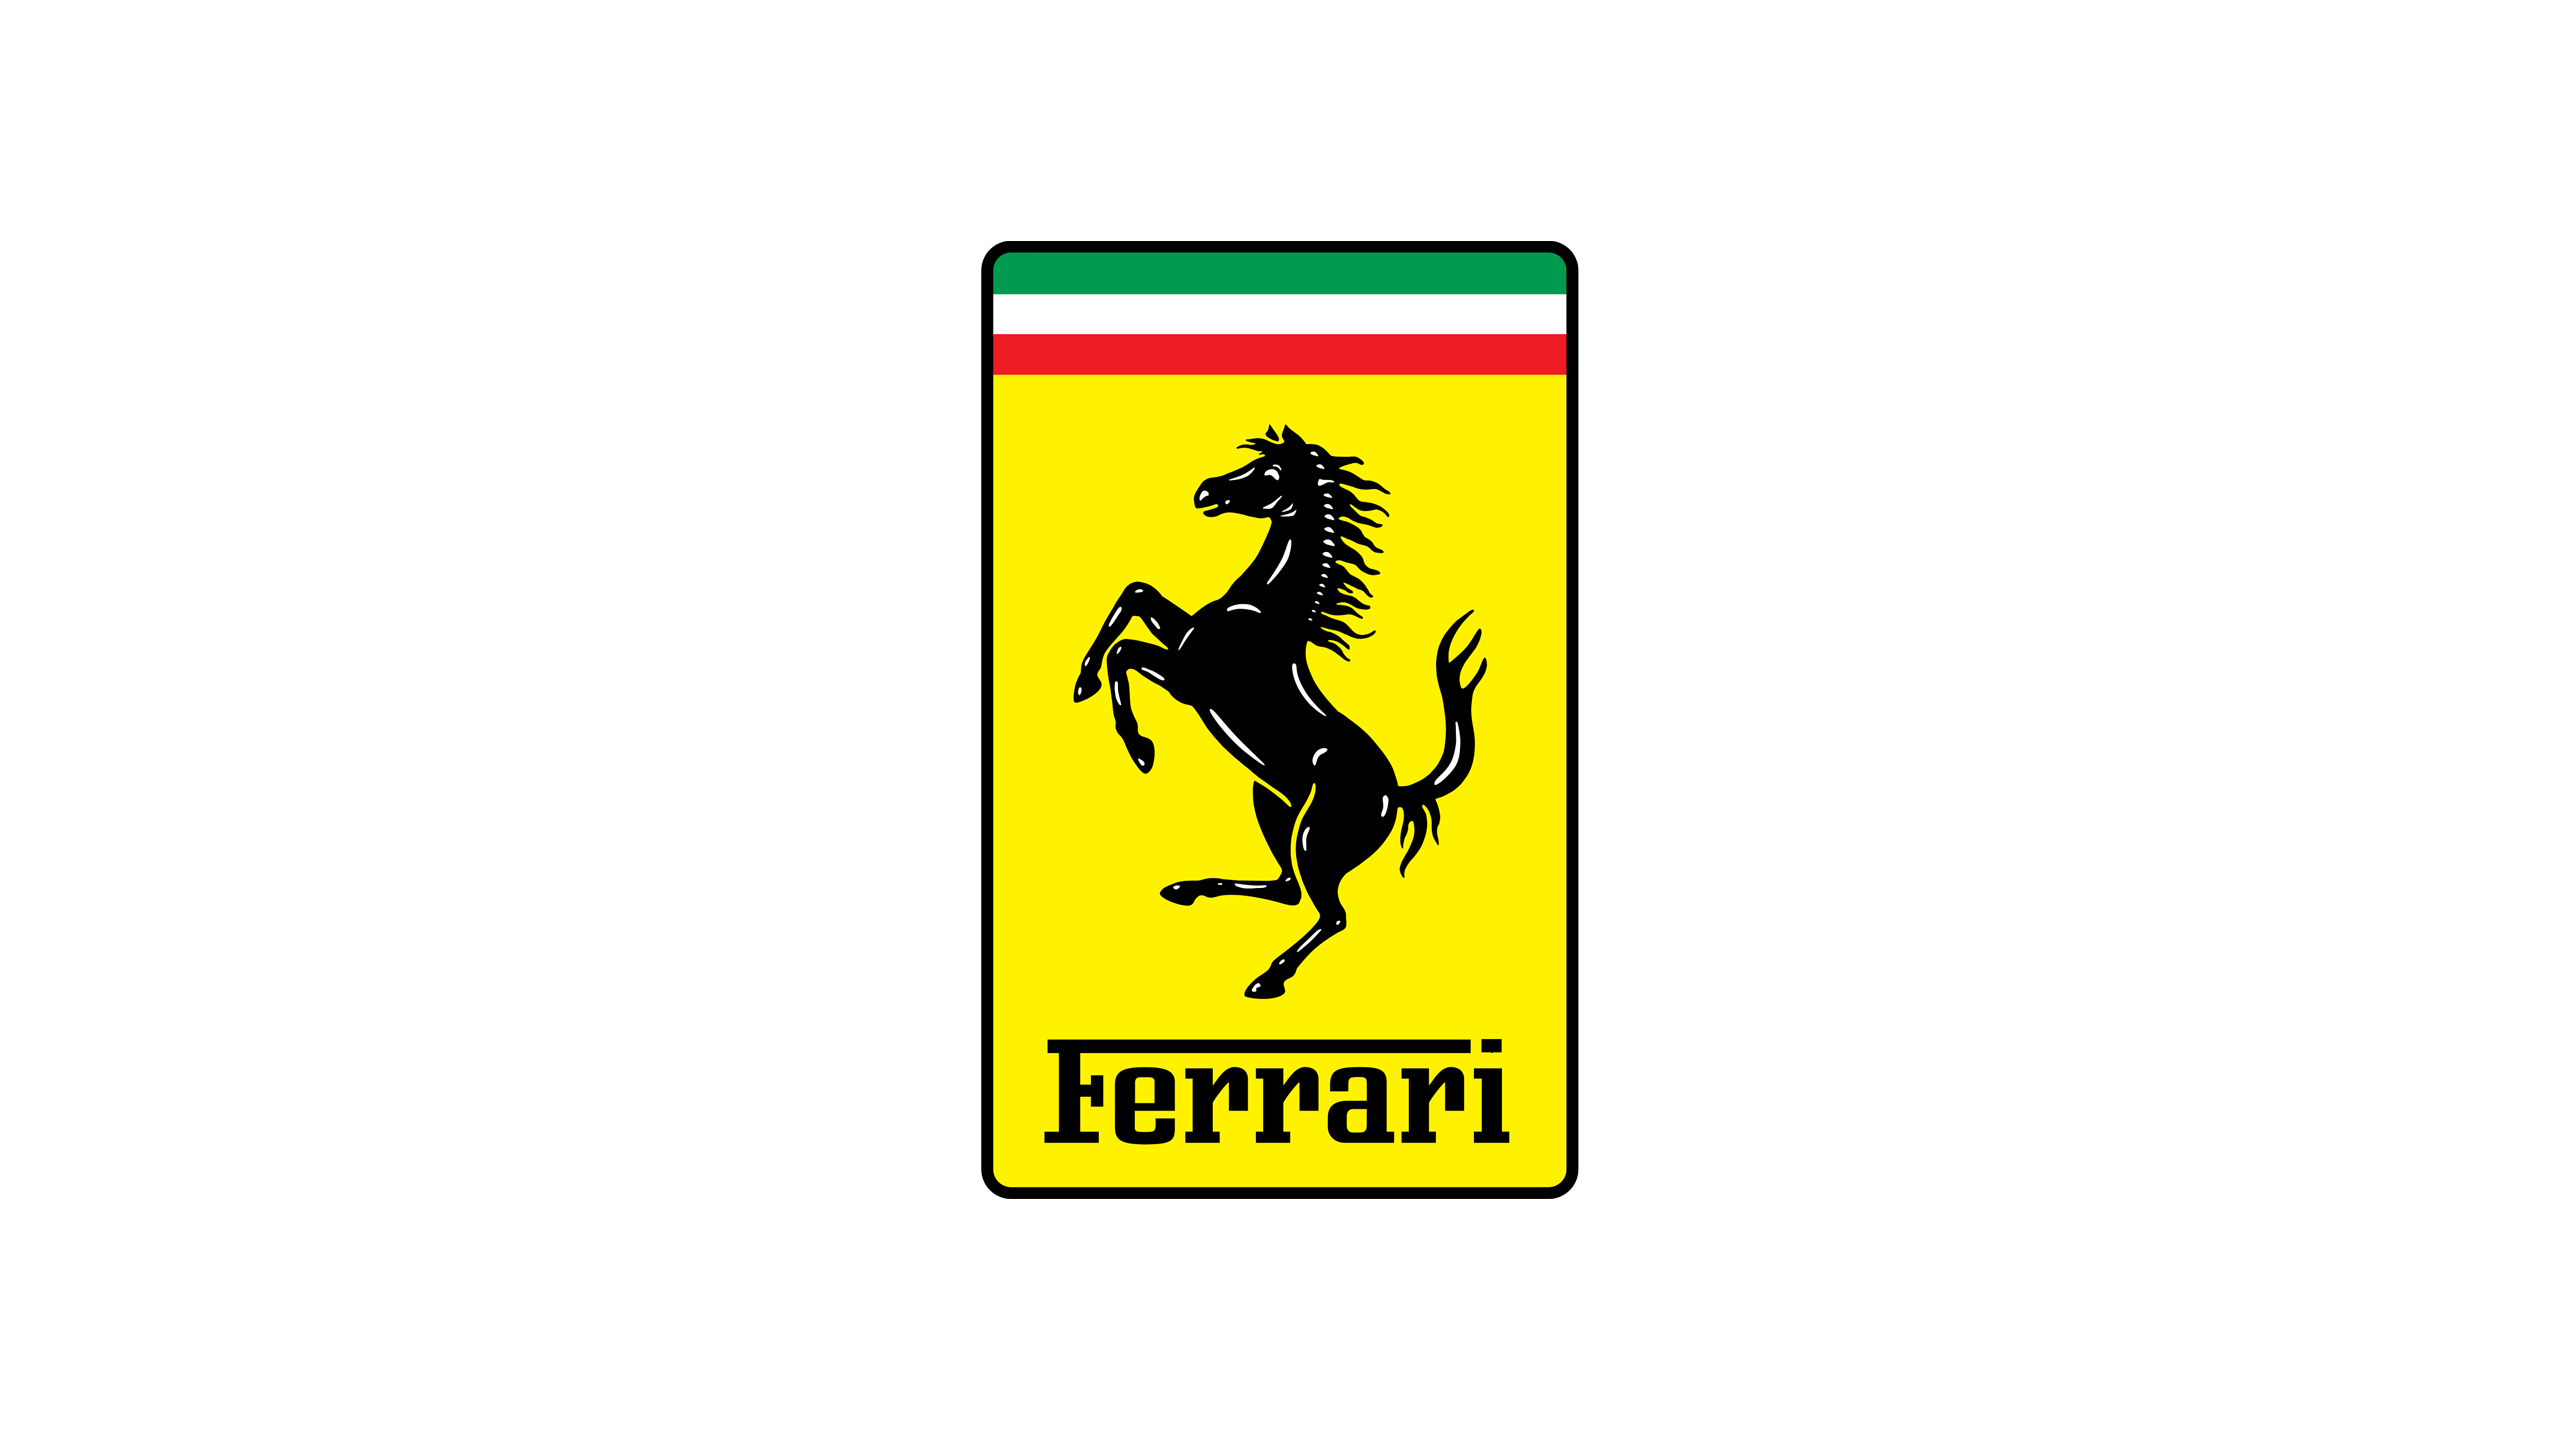 Ferrari symbol images